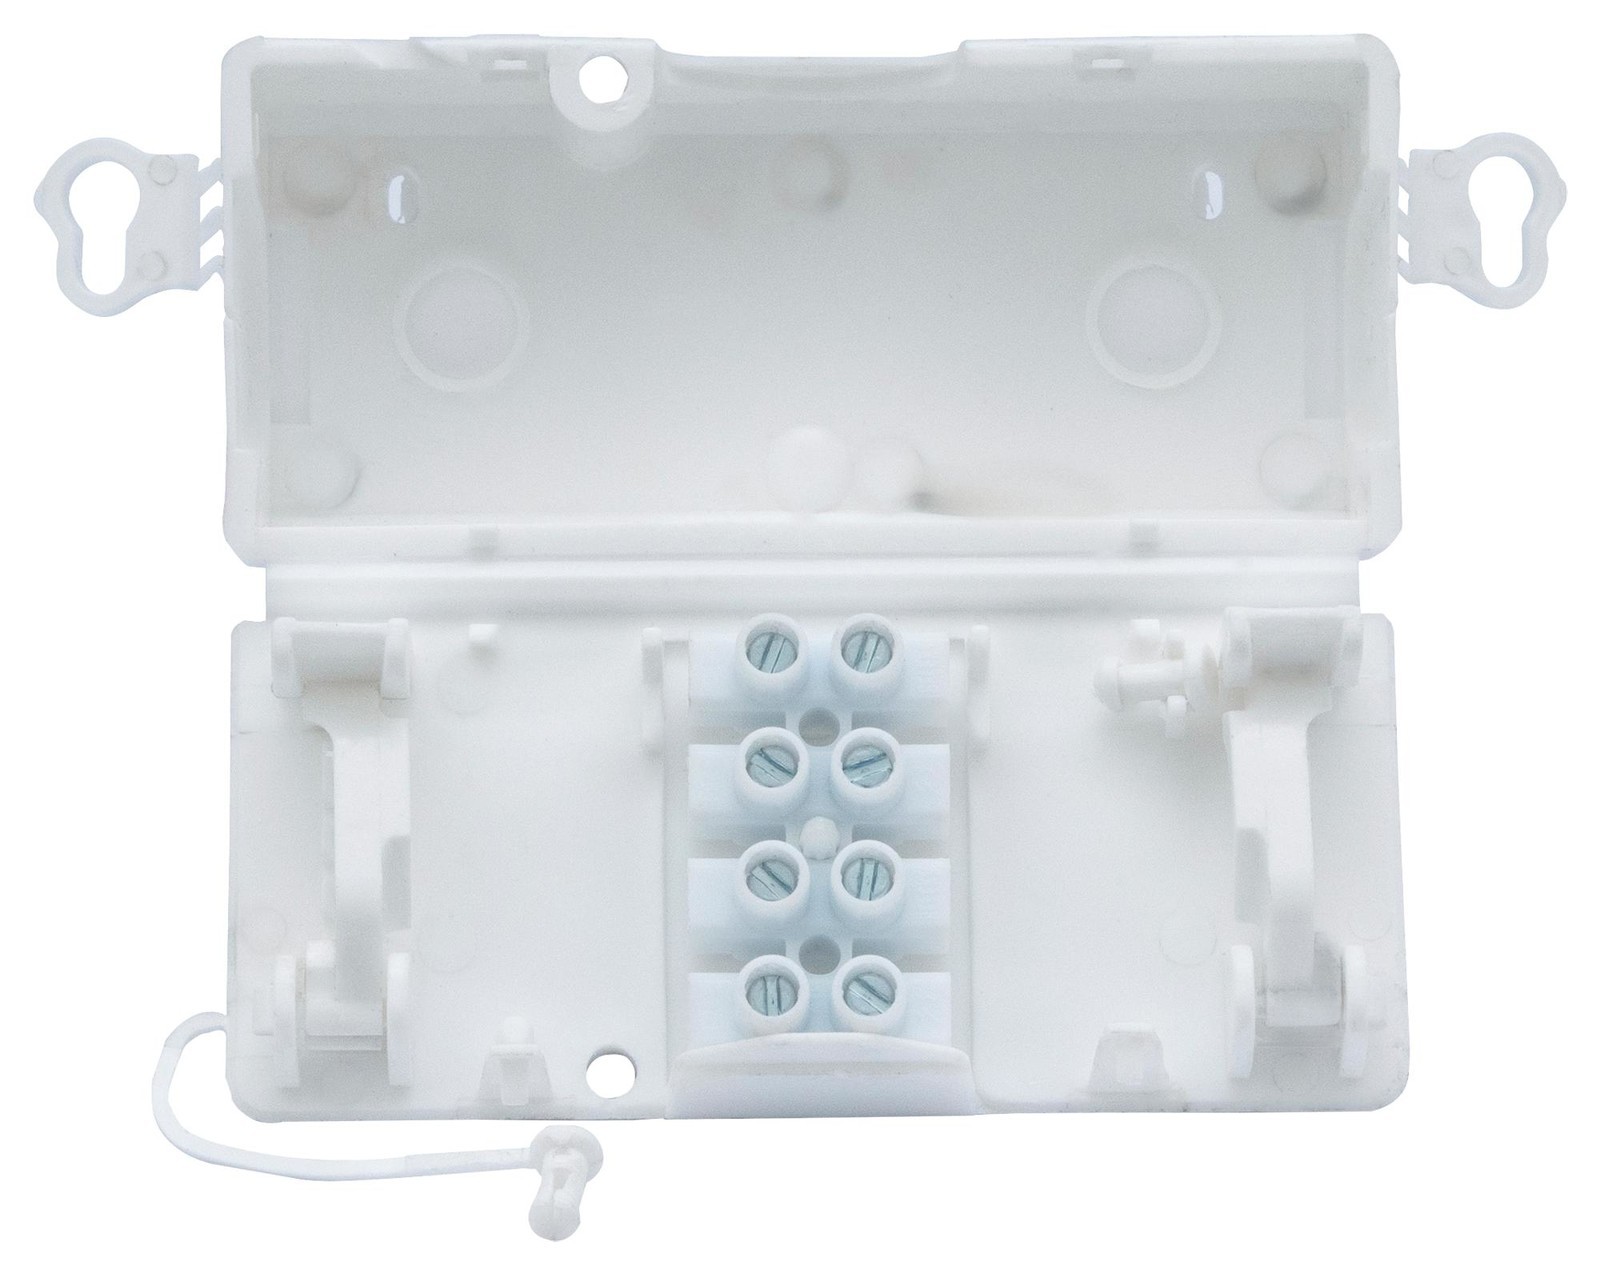 Hylec Debox Sm40 Electrical Junction Box, 4Way, White